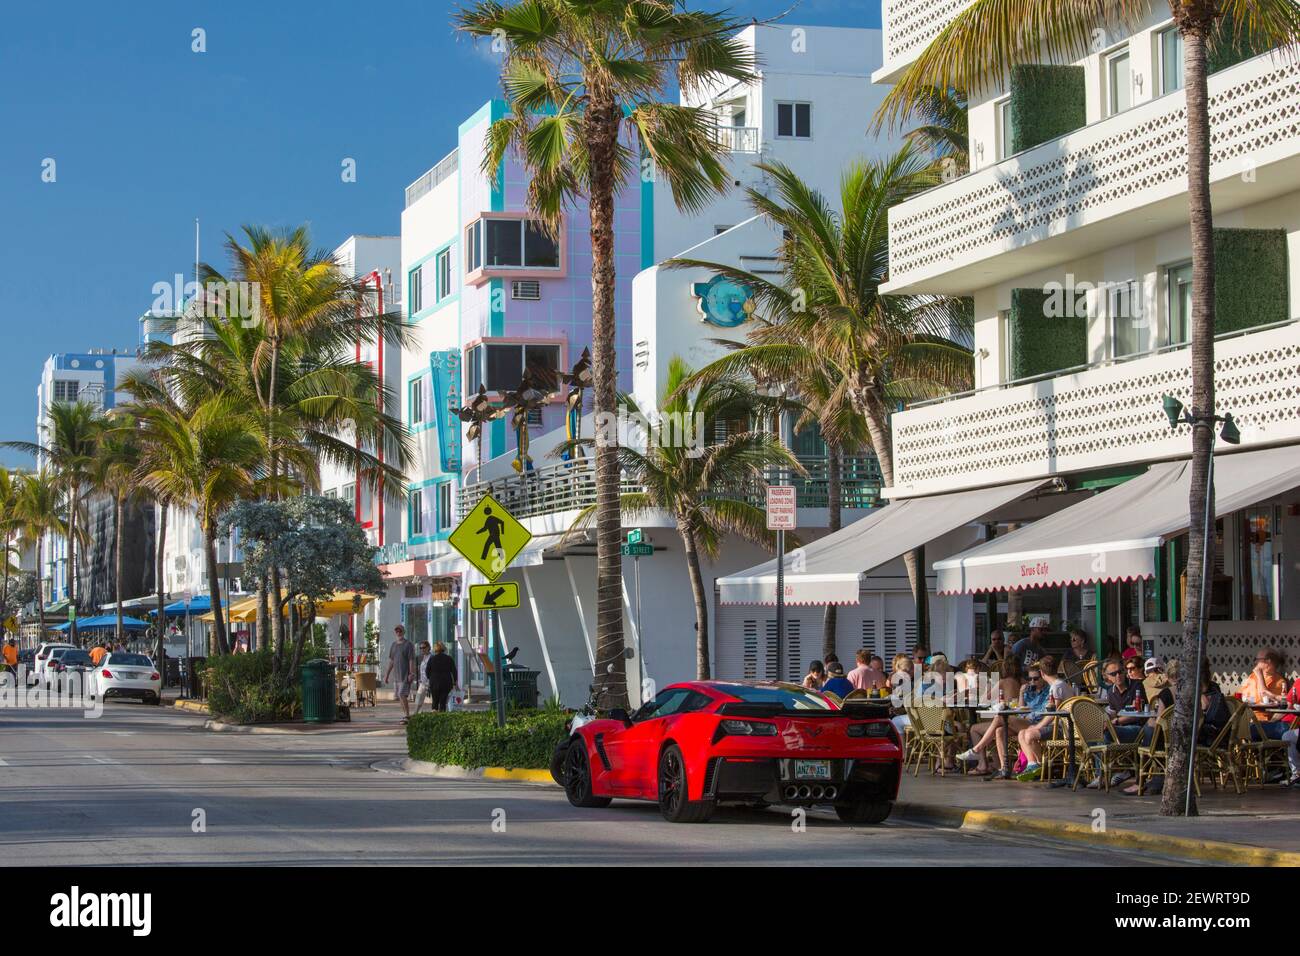 Vista lungo Ocean Drive, Chevrolet Corvette rosso prominente, Art Deco quartiere storico, South Beach, Miami Beach, Florida, Stati Uniti d'America Foto Stock